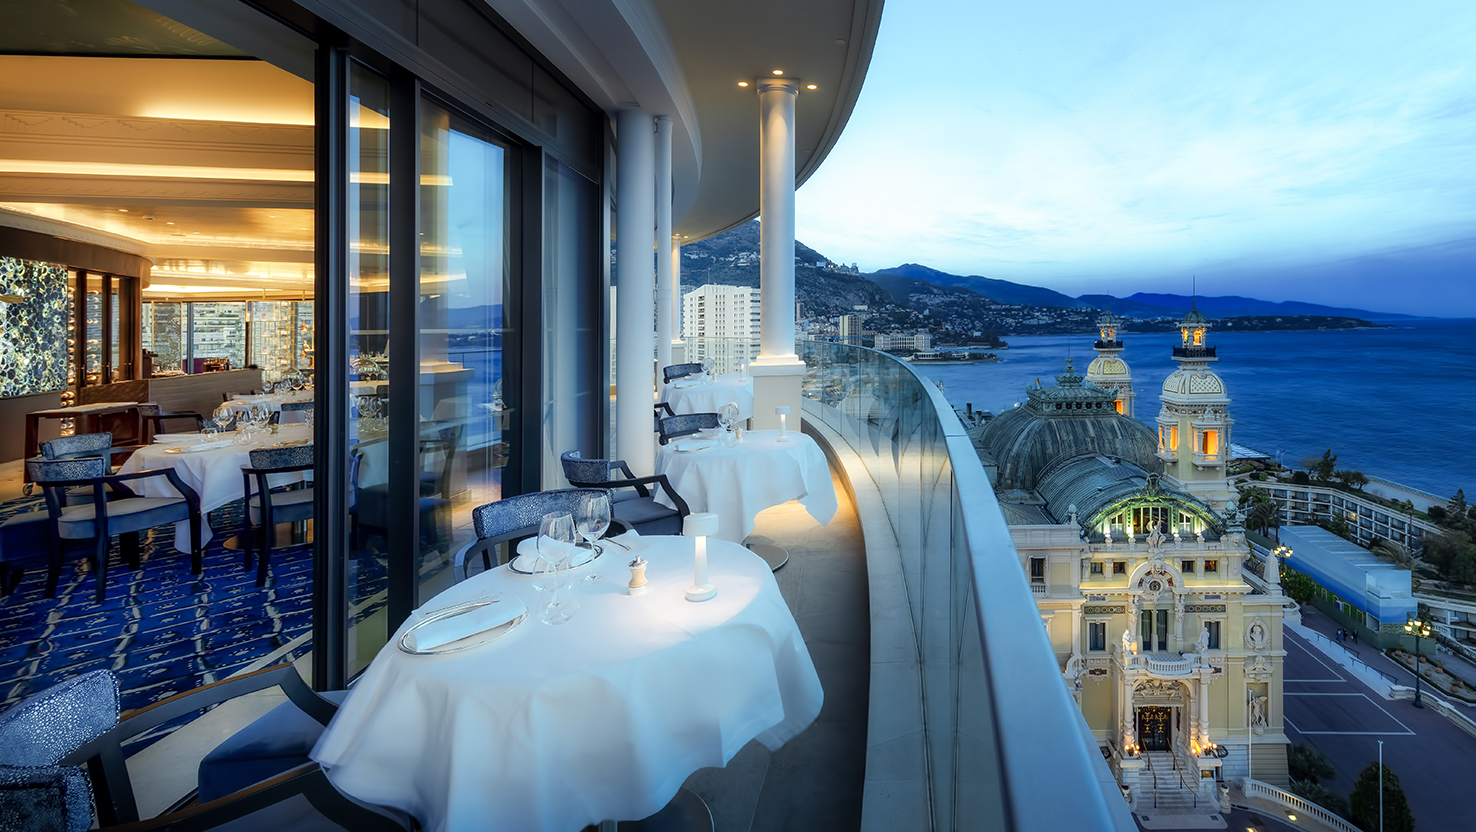 Monte-Carlo Société des Bains de Mer, Hotels, restaurants, casinos